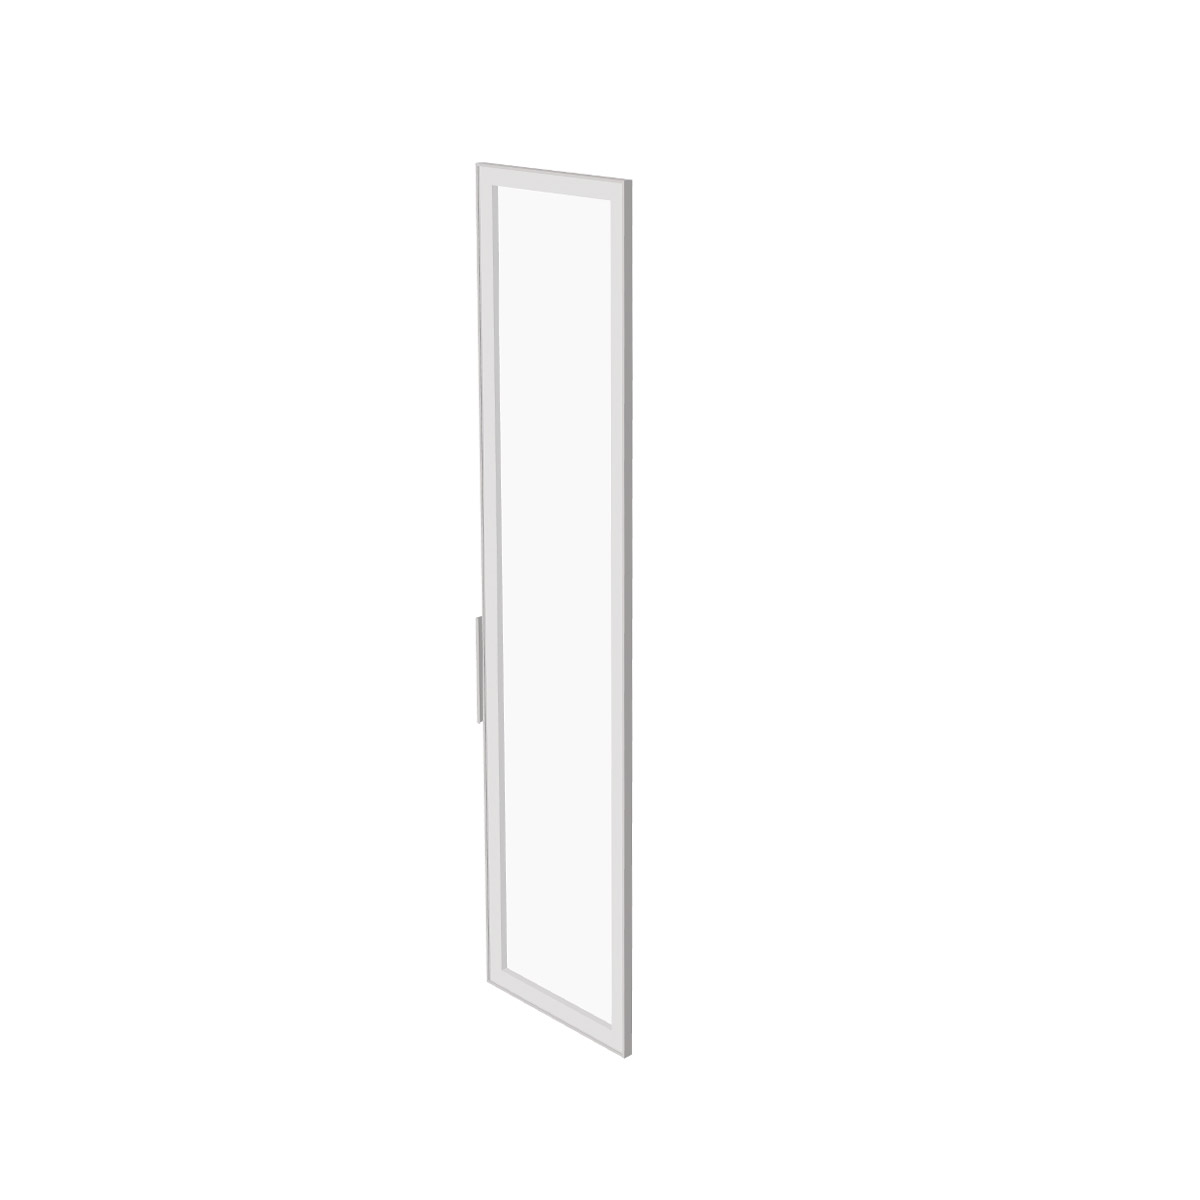 Дверь высокая стеклянная Ts-09.1 фото 1